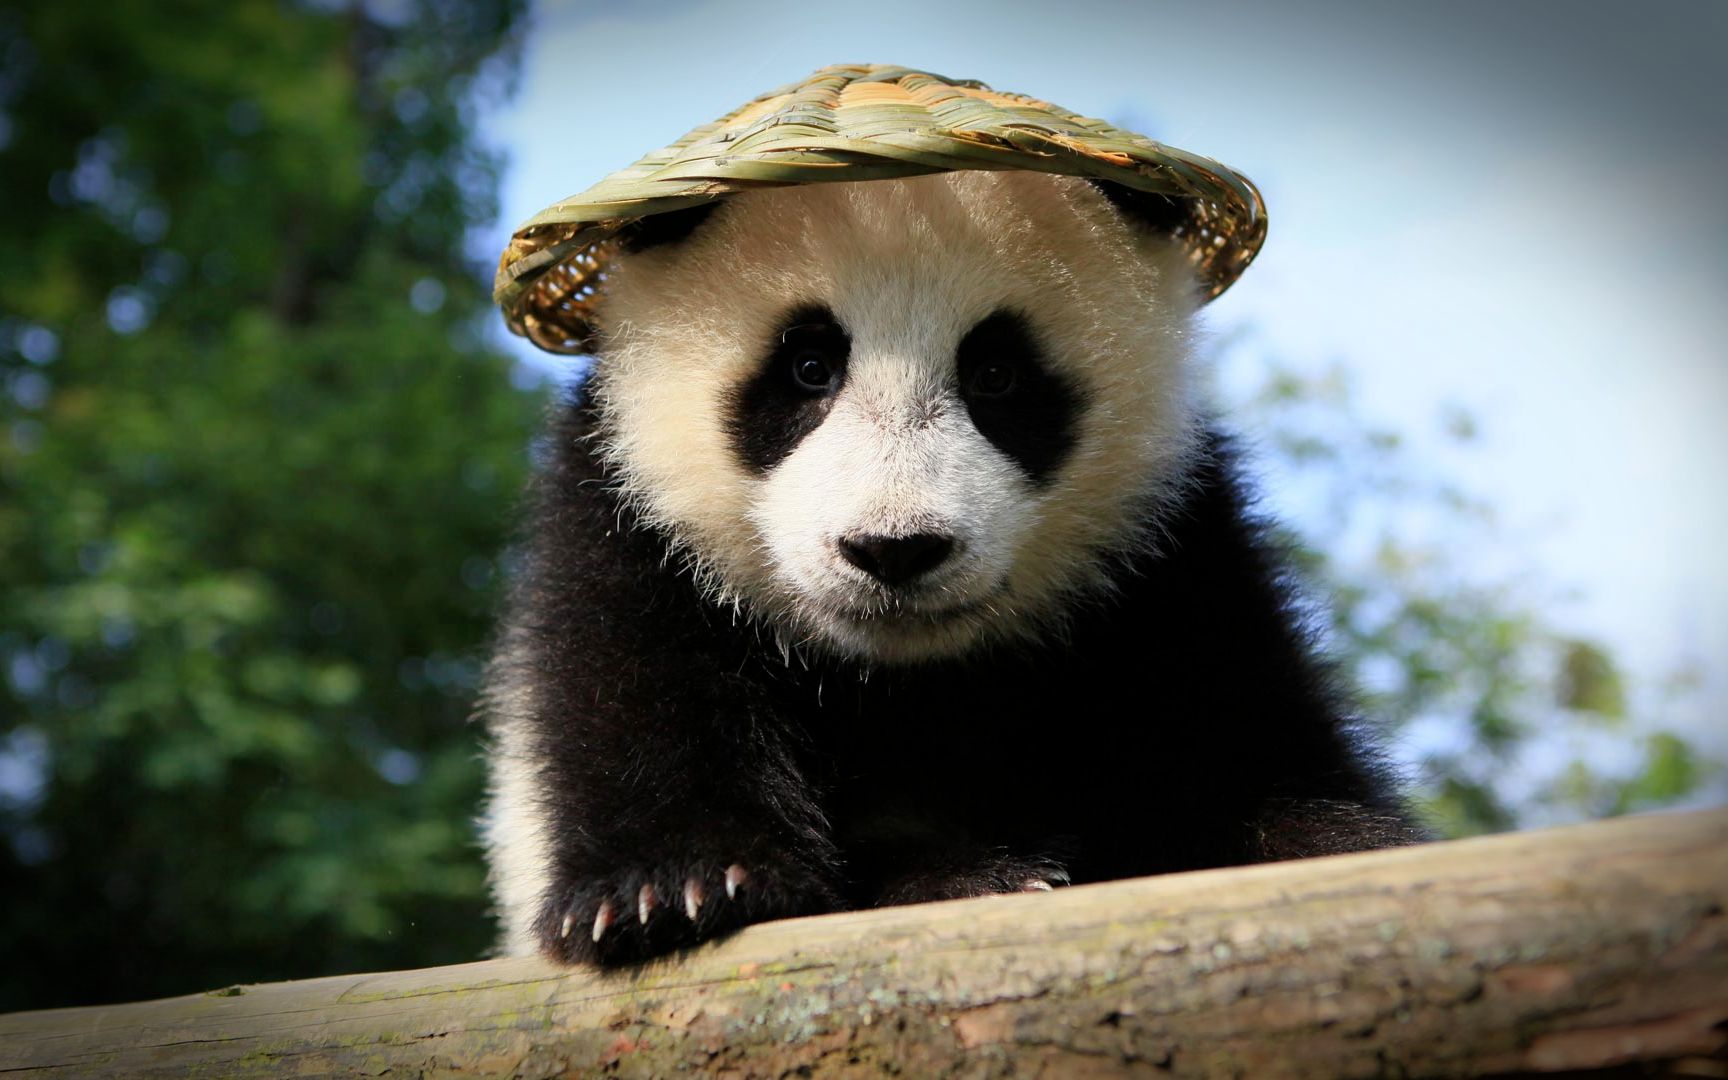 大熊猫国家公园唐家河片区2020年上半年累计捕捉大熊猫影像高达18次 _湿地保护_www.shidicn.com